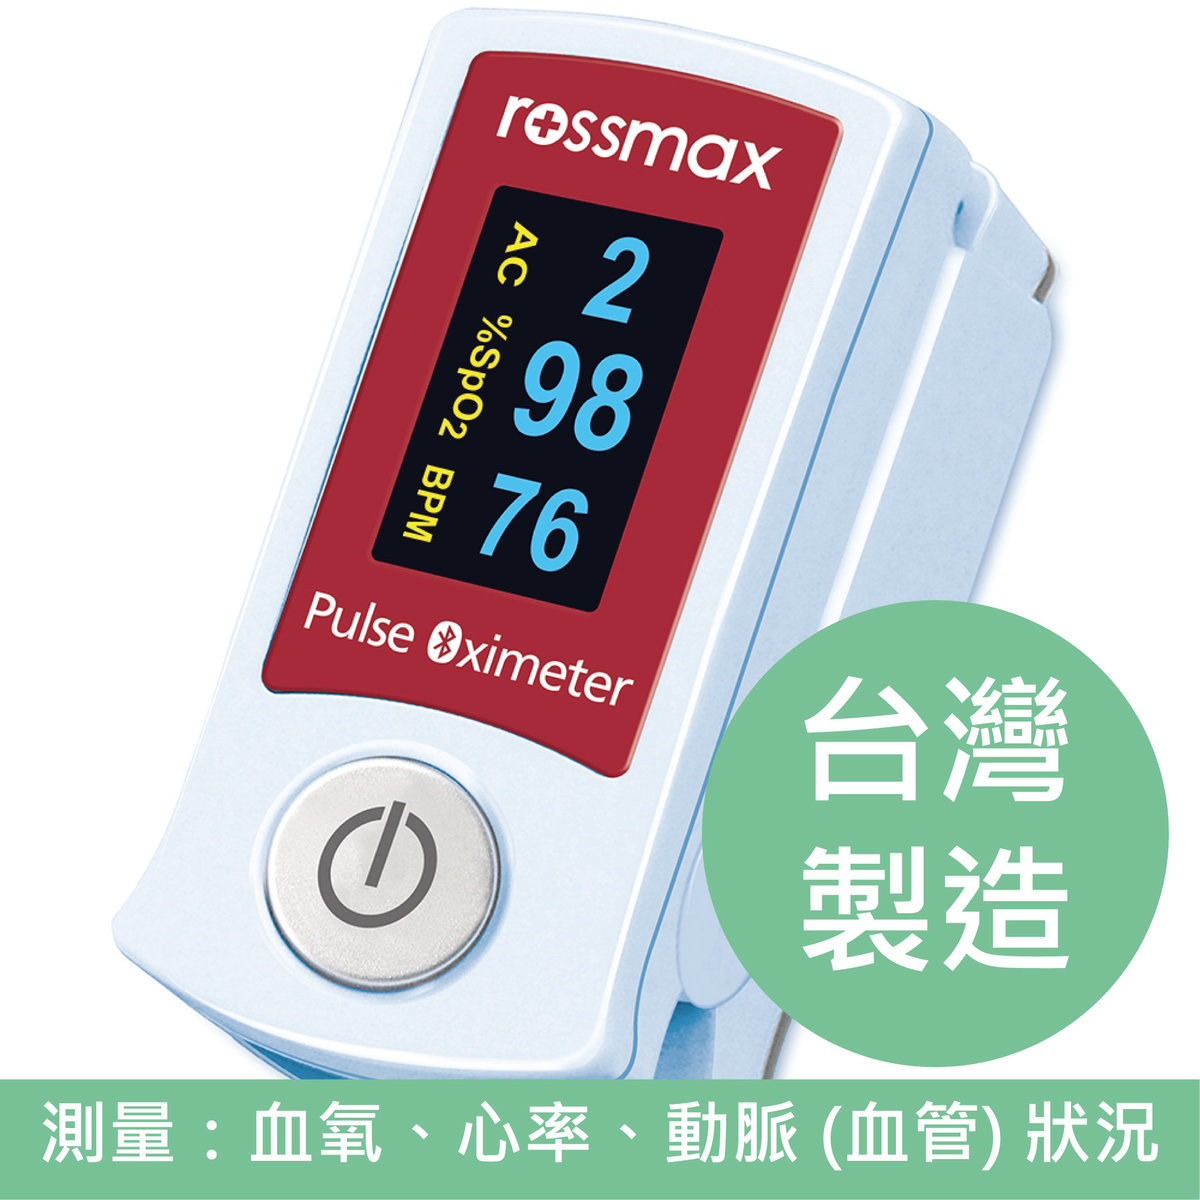 SB210 血氧測量儀 (台灣製造) *測血氧、心率、動脈 (血管) 狀況 [及早發現「快樂缺氧」、新冠肺炎「確診可能」的預兆]